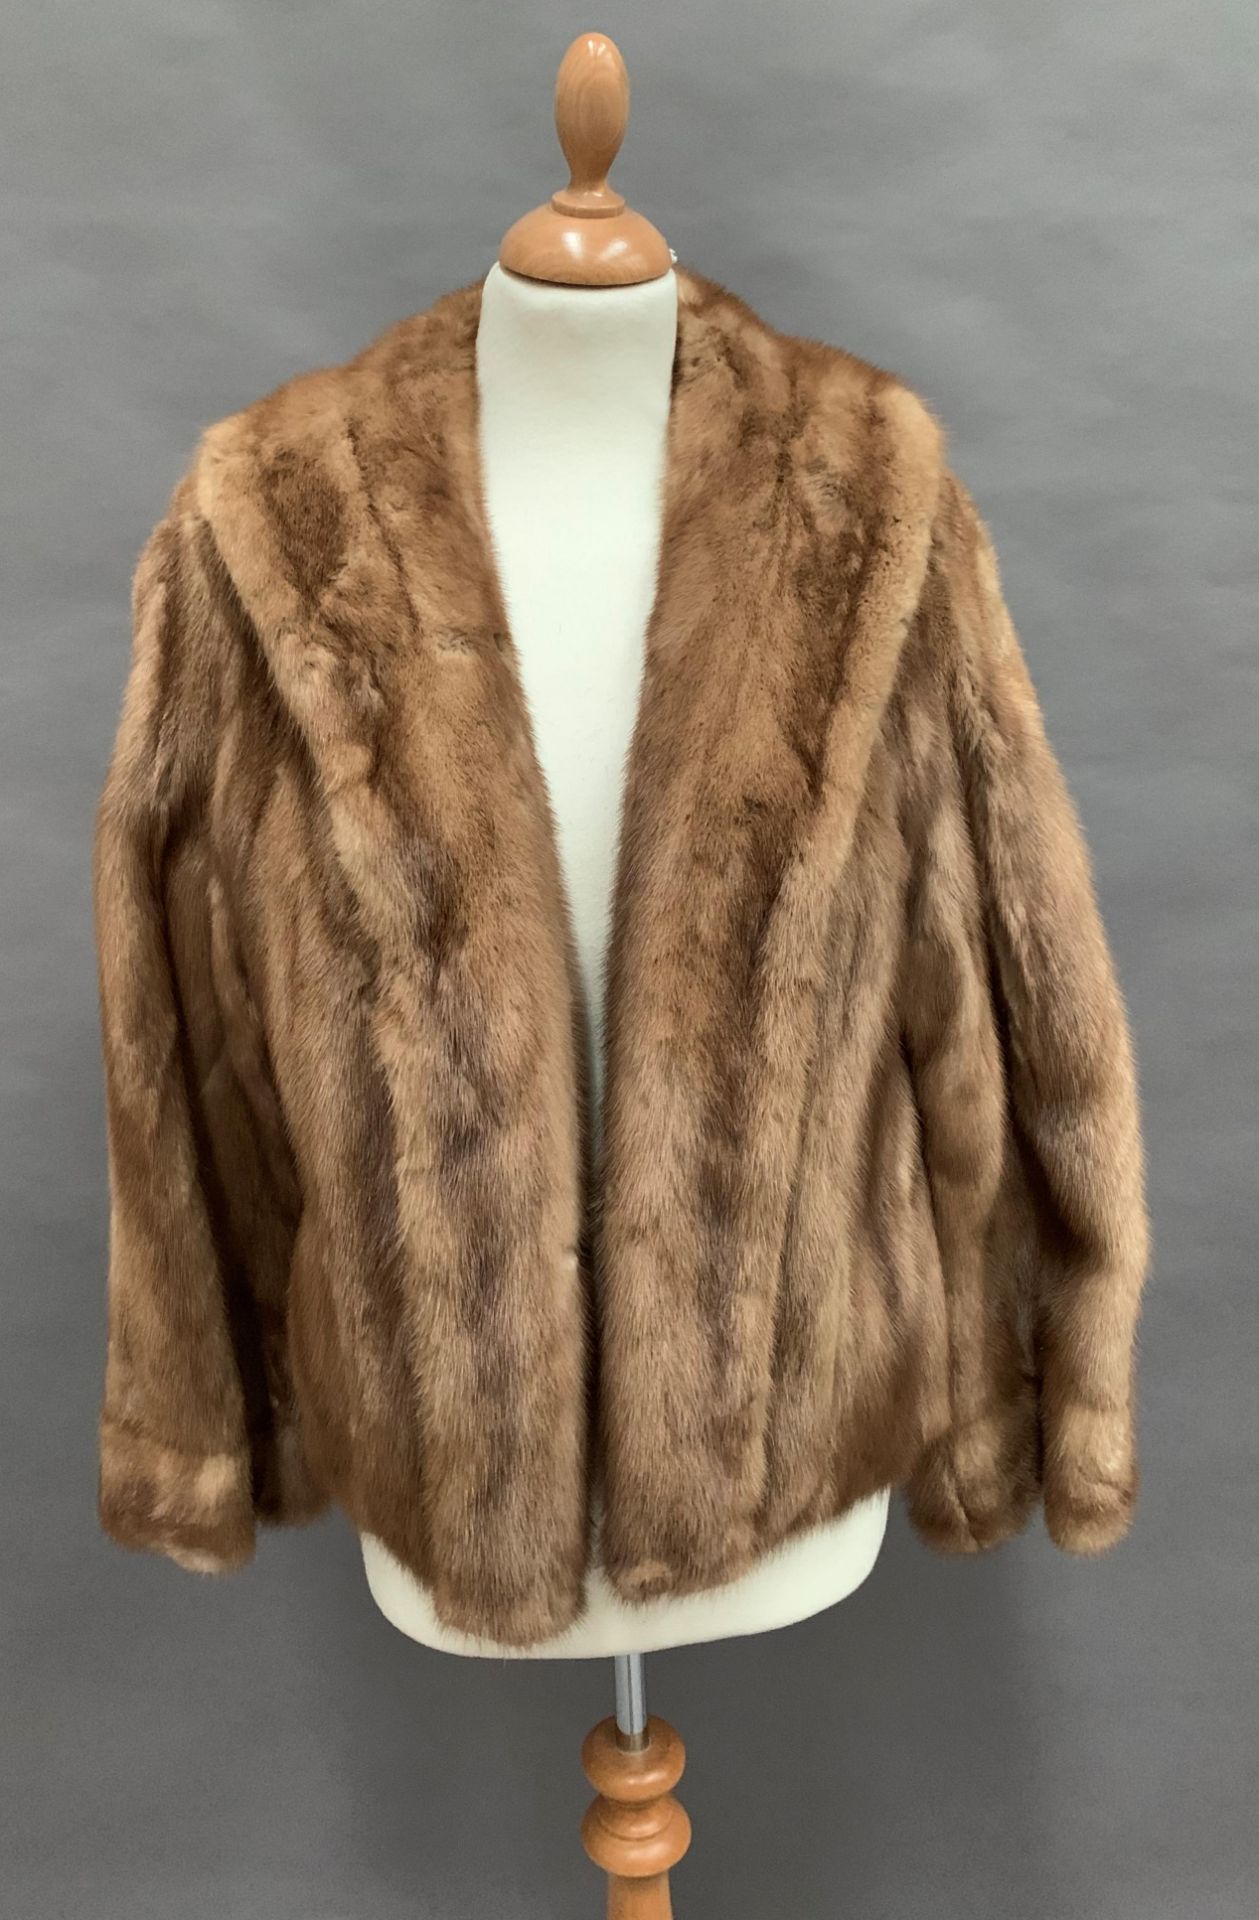 Lady's mink fur jacket